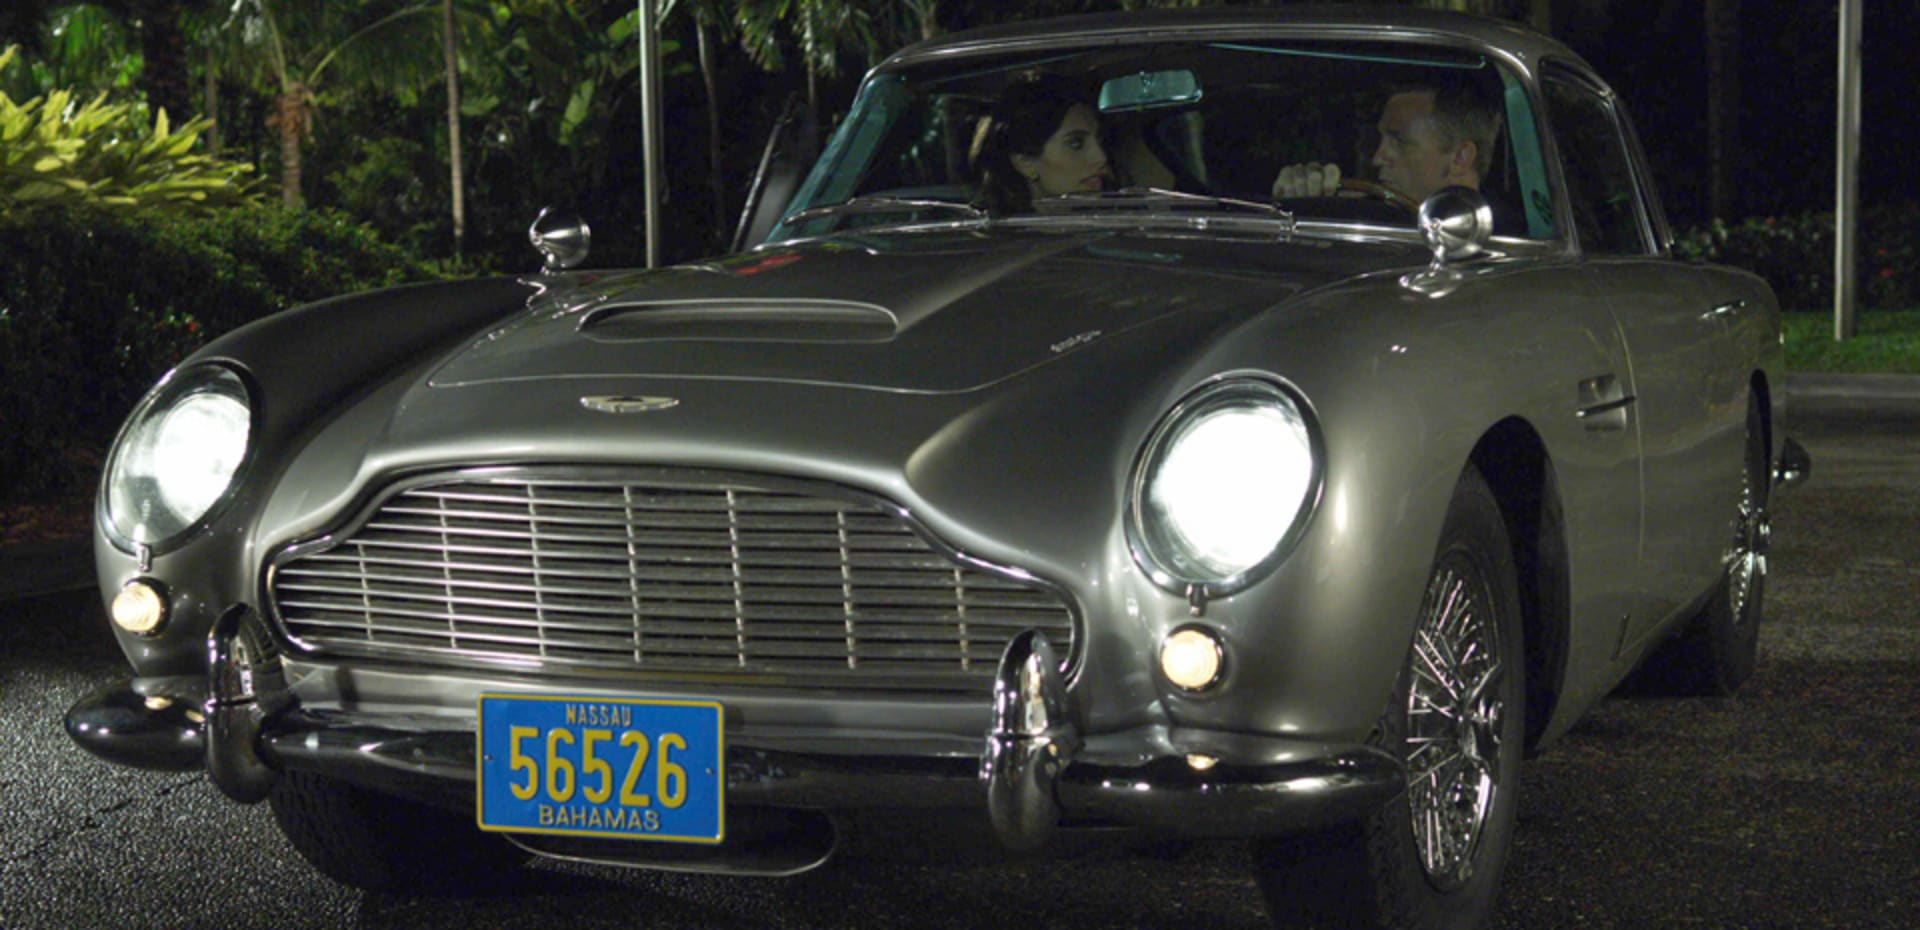 V tomhle autě se proháněl Daniel Craig jako agent 007